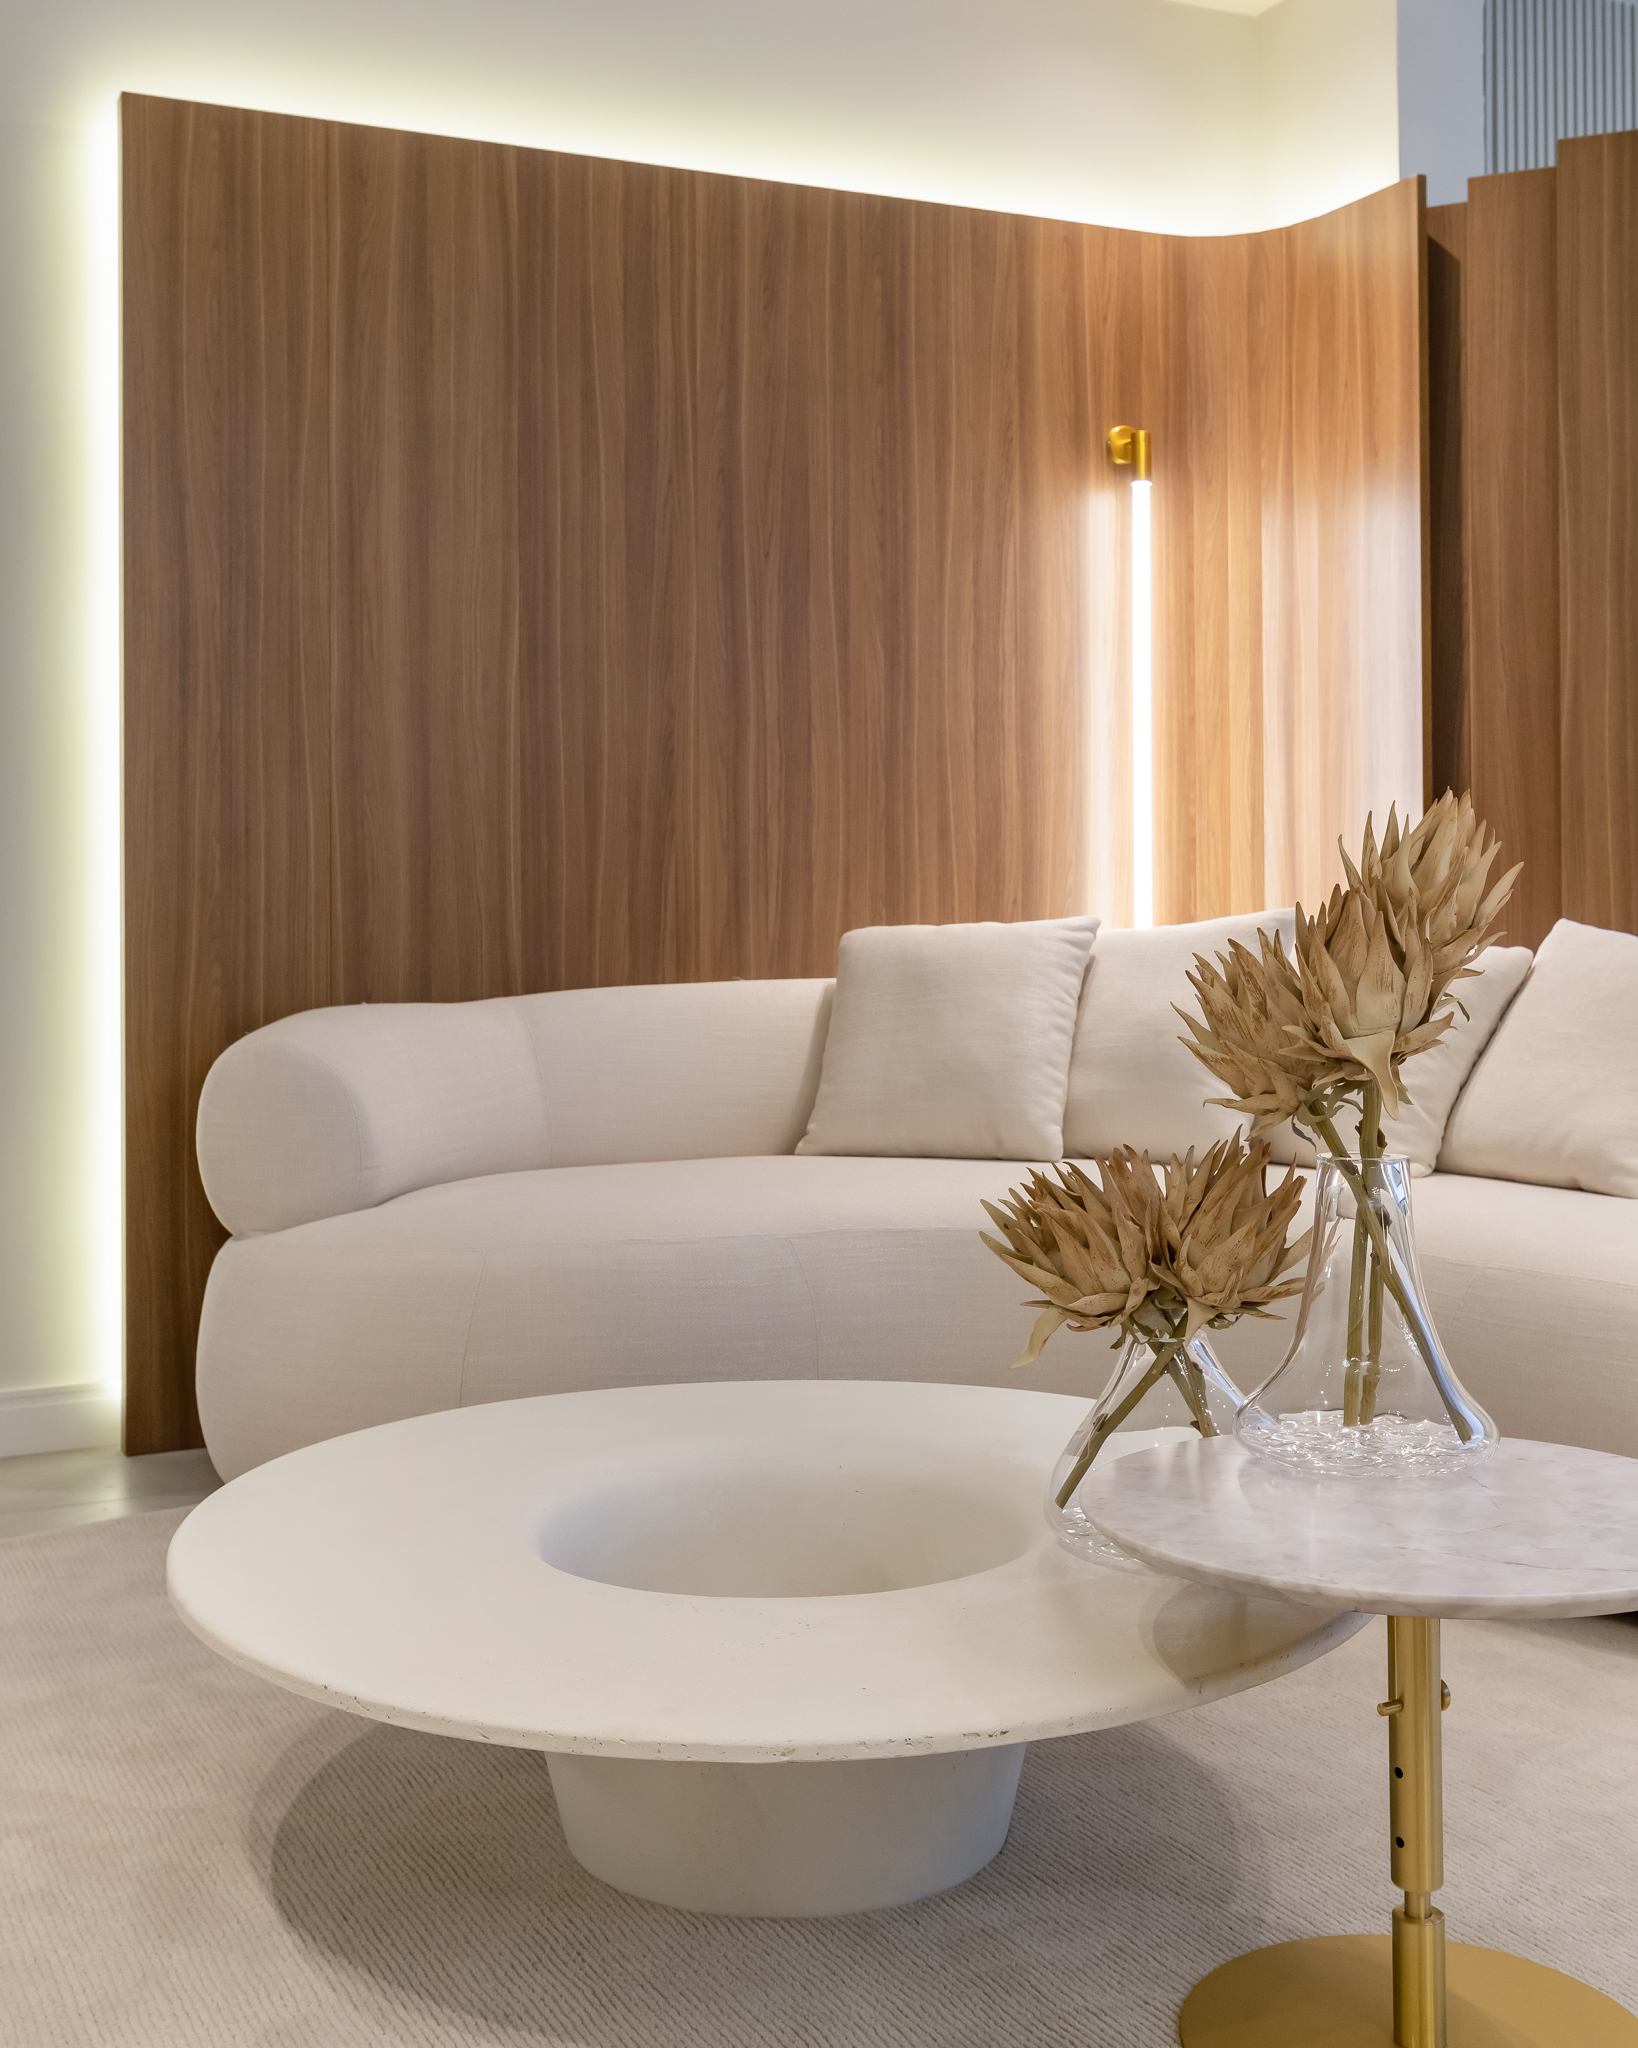 Descubra as características do Old Money e Quiet luxury na decoração. Na foto, sala de estar com sofá branco curvo, mesa de centro.